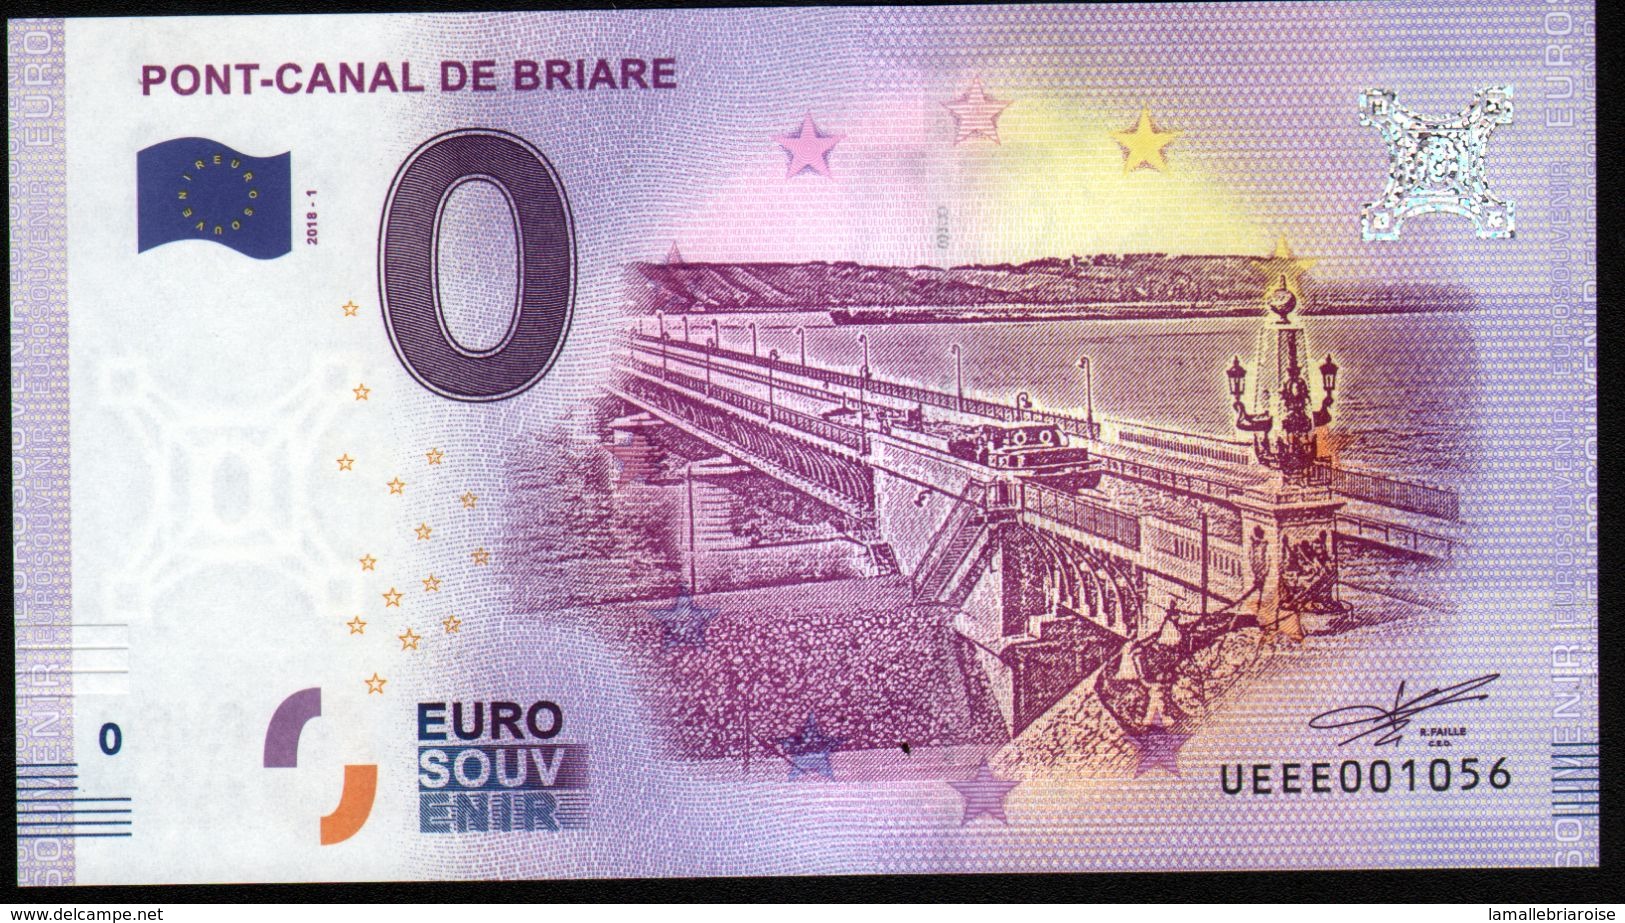 France - Billet Touristique 0 Euro 2018 N°1056 (UEEE001056/5000) - PONT-CANAL DE BRIARE - Essais Privés / Non-officiels